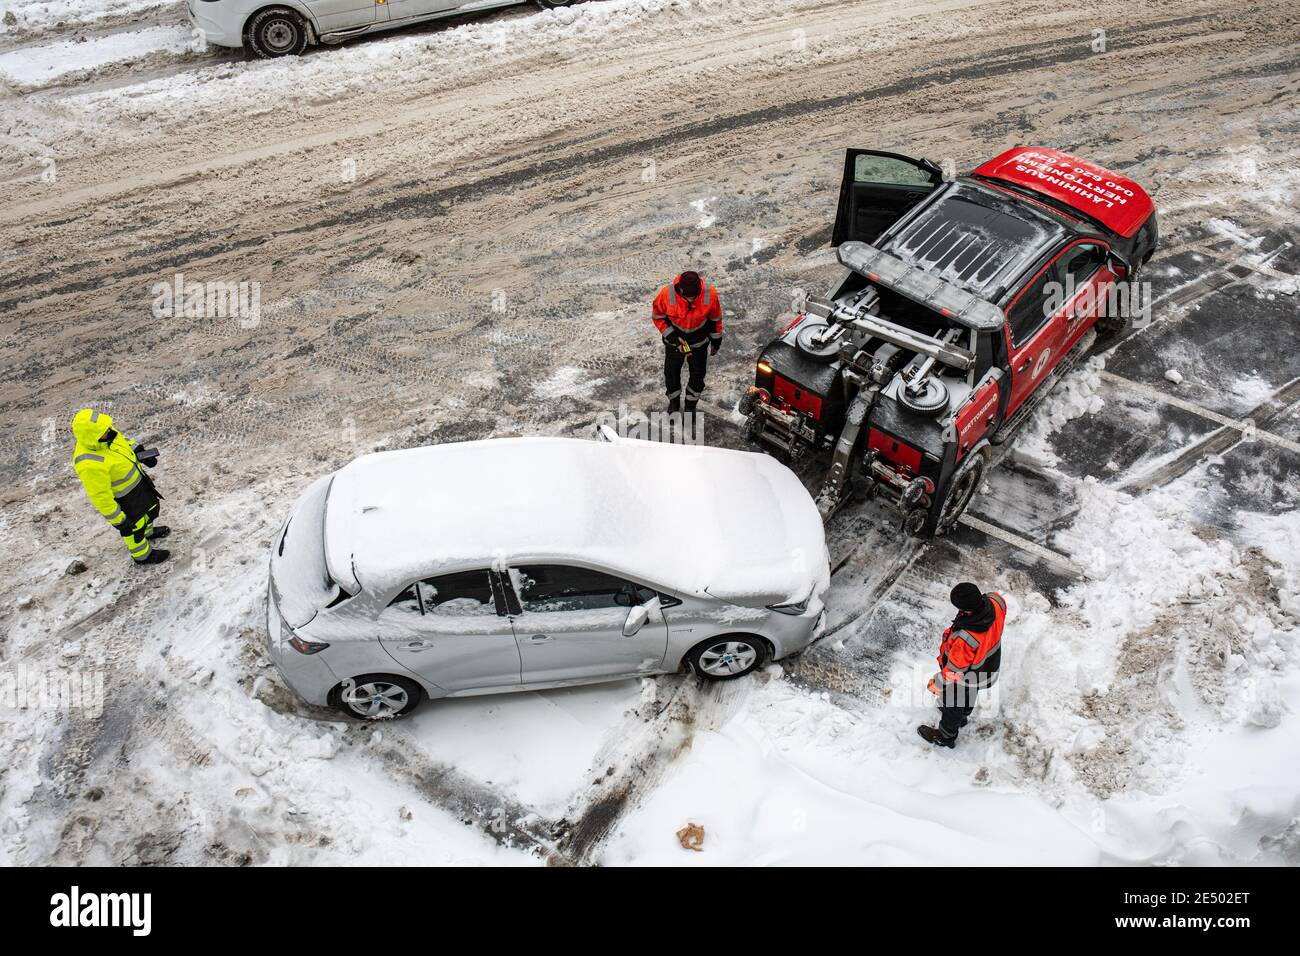 Auto, das - trotz der Aufforderung zur Entfernung - die Schneebank-Räumung behindert oder behindert, wird im finnischen Taka-Töölön-Bezirk abgeschleppt Stockfoto